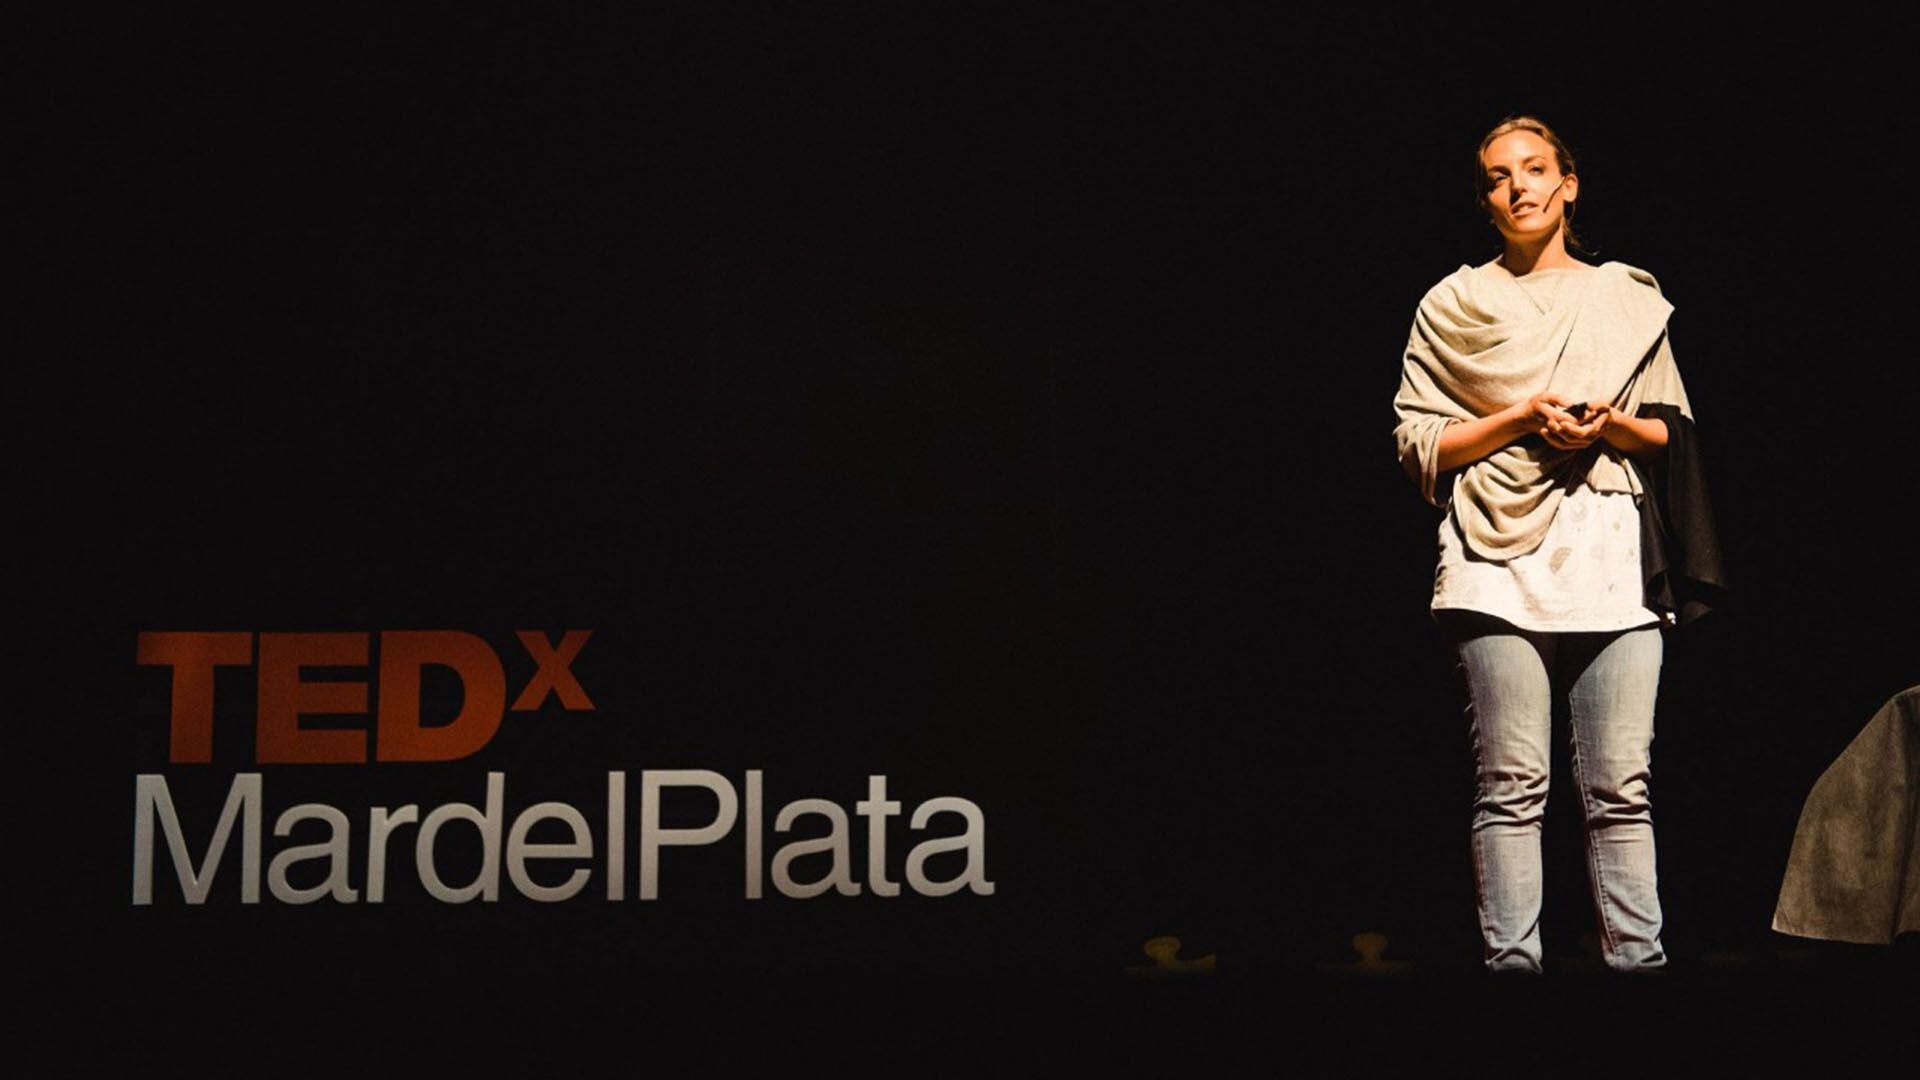 “Nuestra basura: el camino a un consumo responsable” es el título de la charla TED que Edelmira Altube dio a fines del año pasado